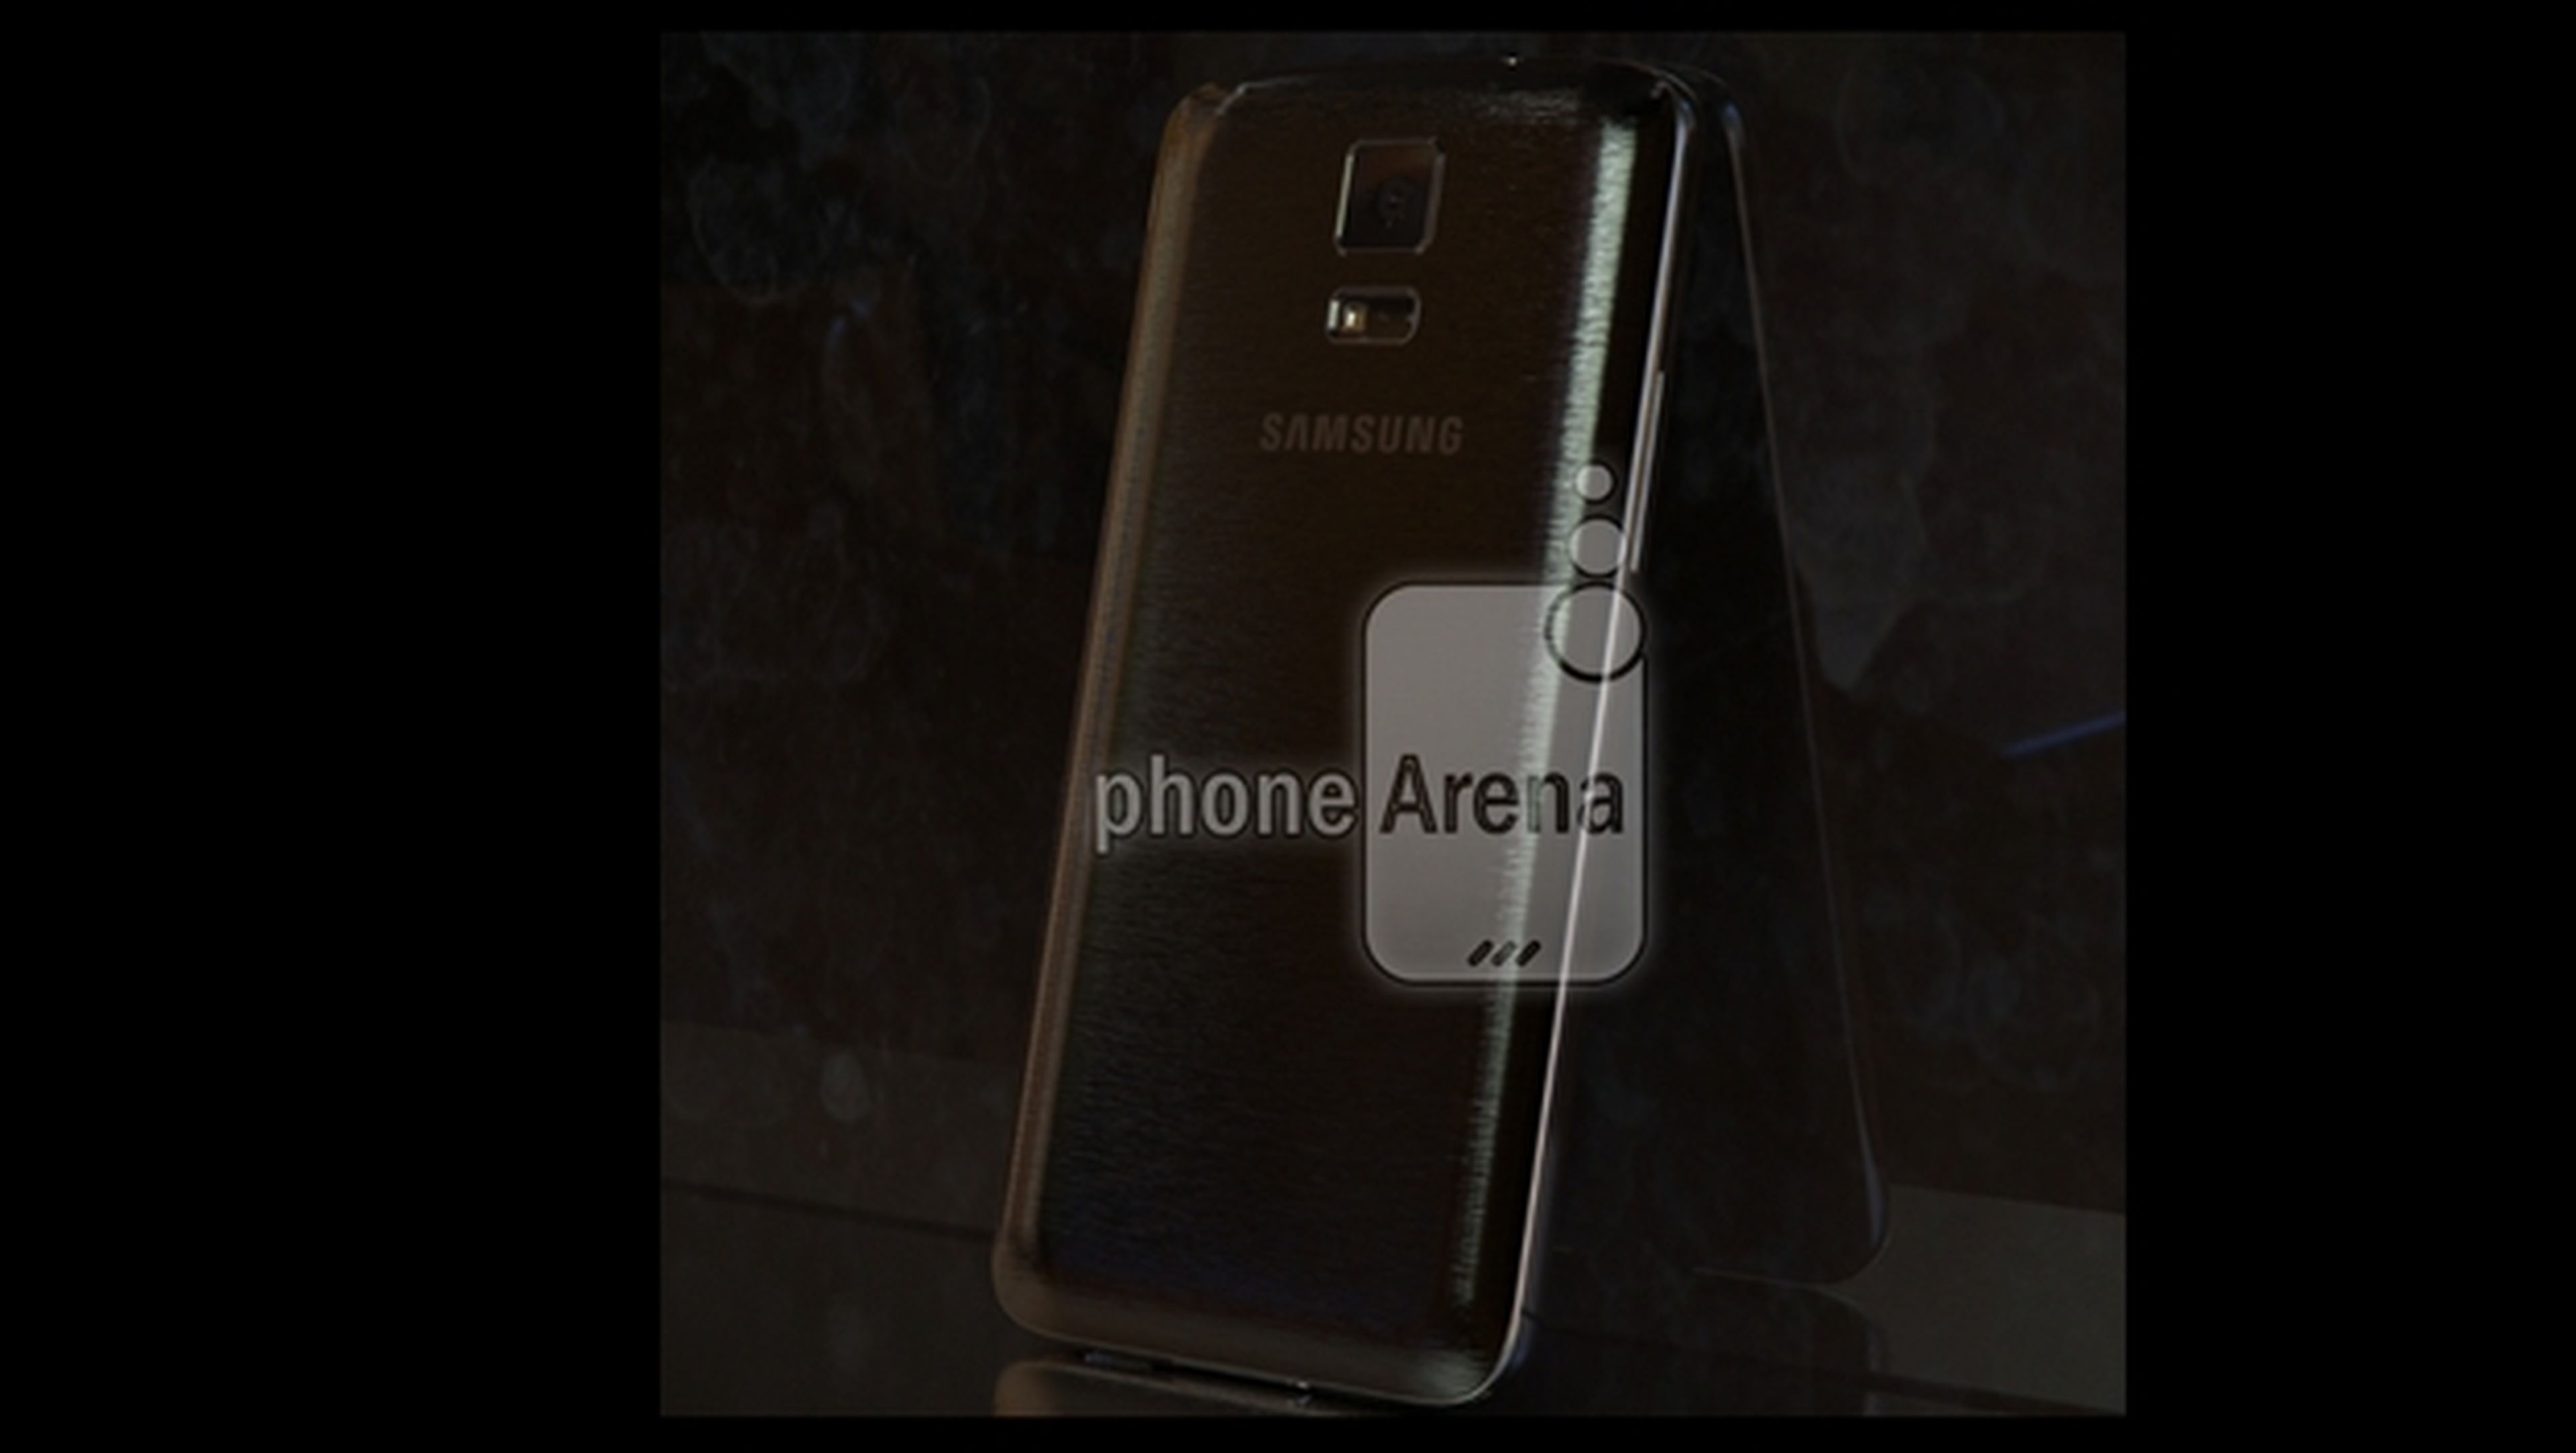 Fotos filtradas del Samsung Galaxy F o Galaxy S5 Premium, una versión de lujo con carcasa metálica, pantalla QHD y procesador SnapDragon 805.